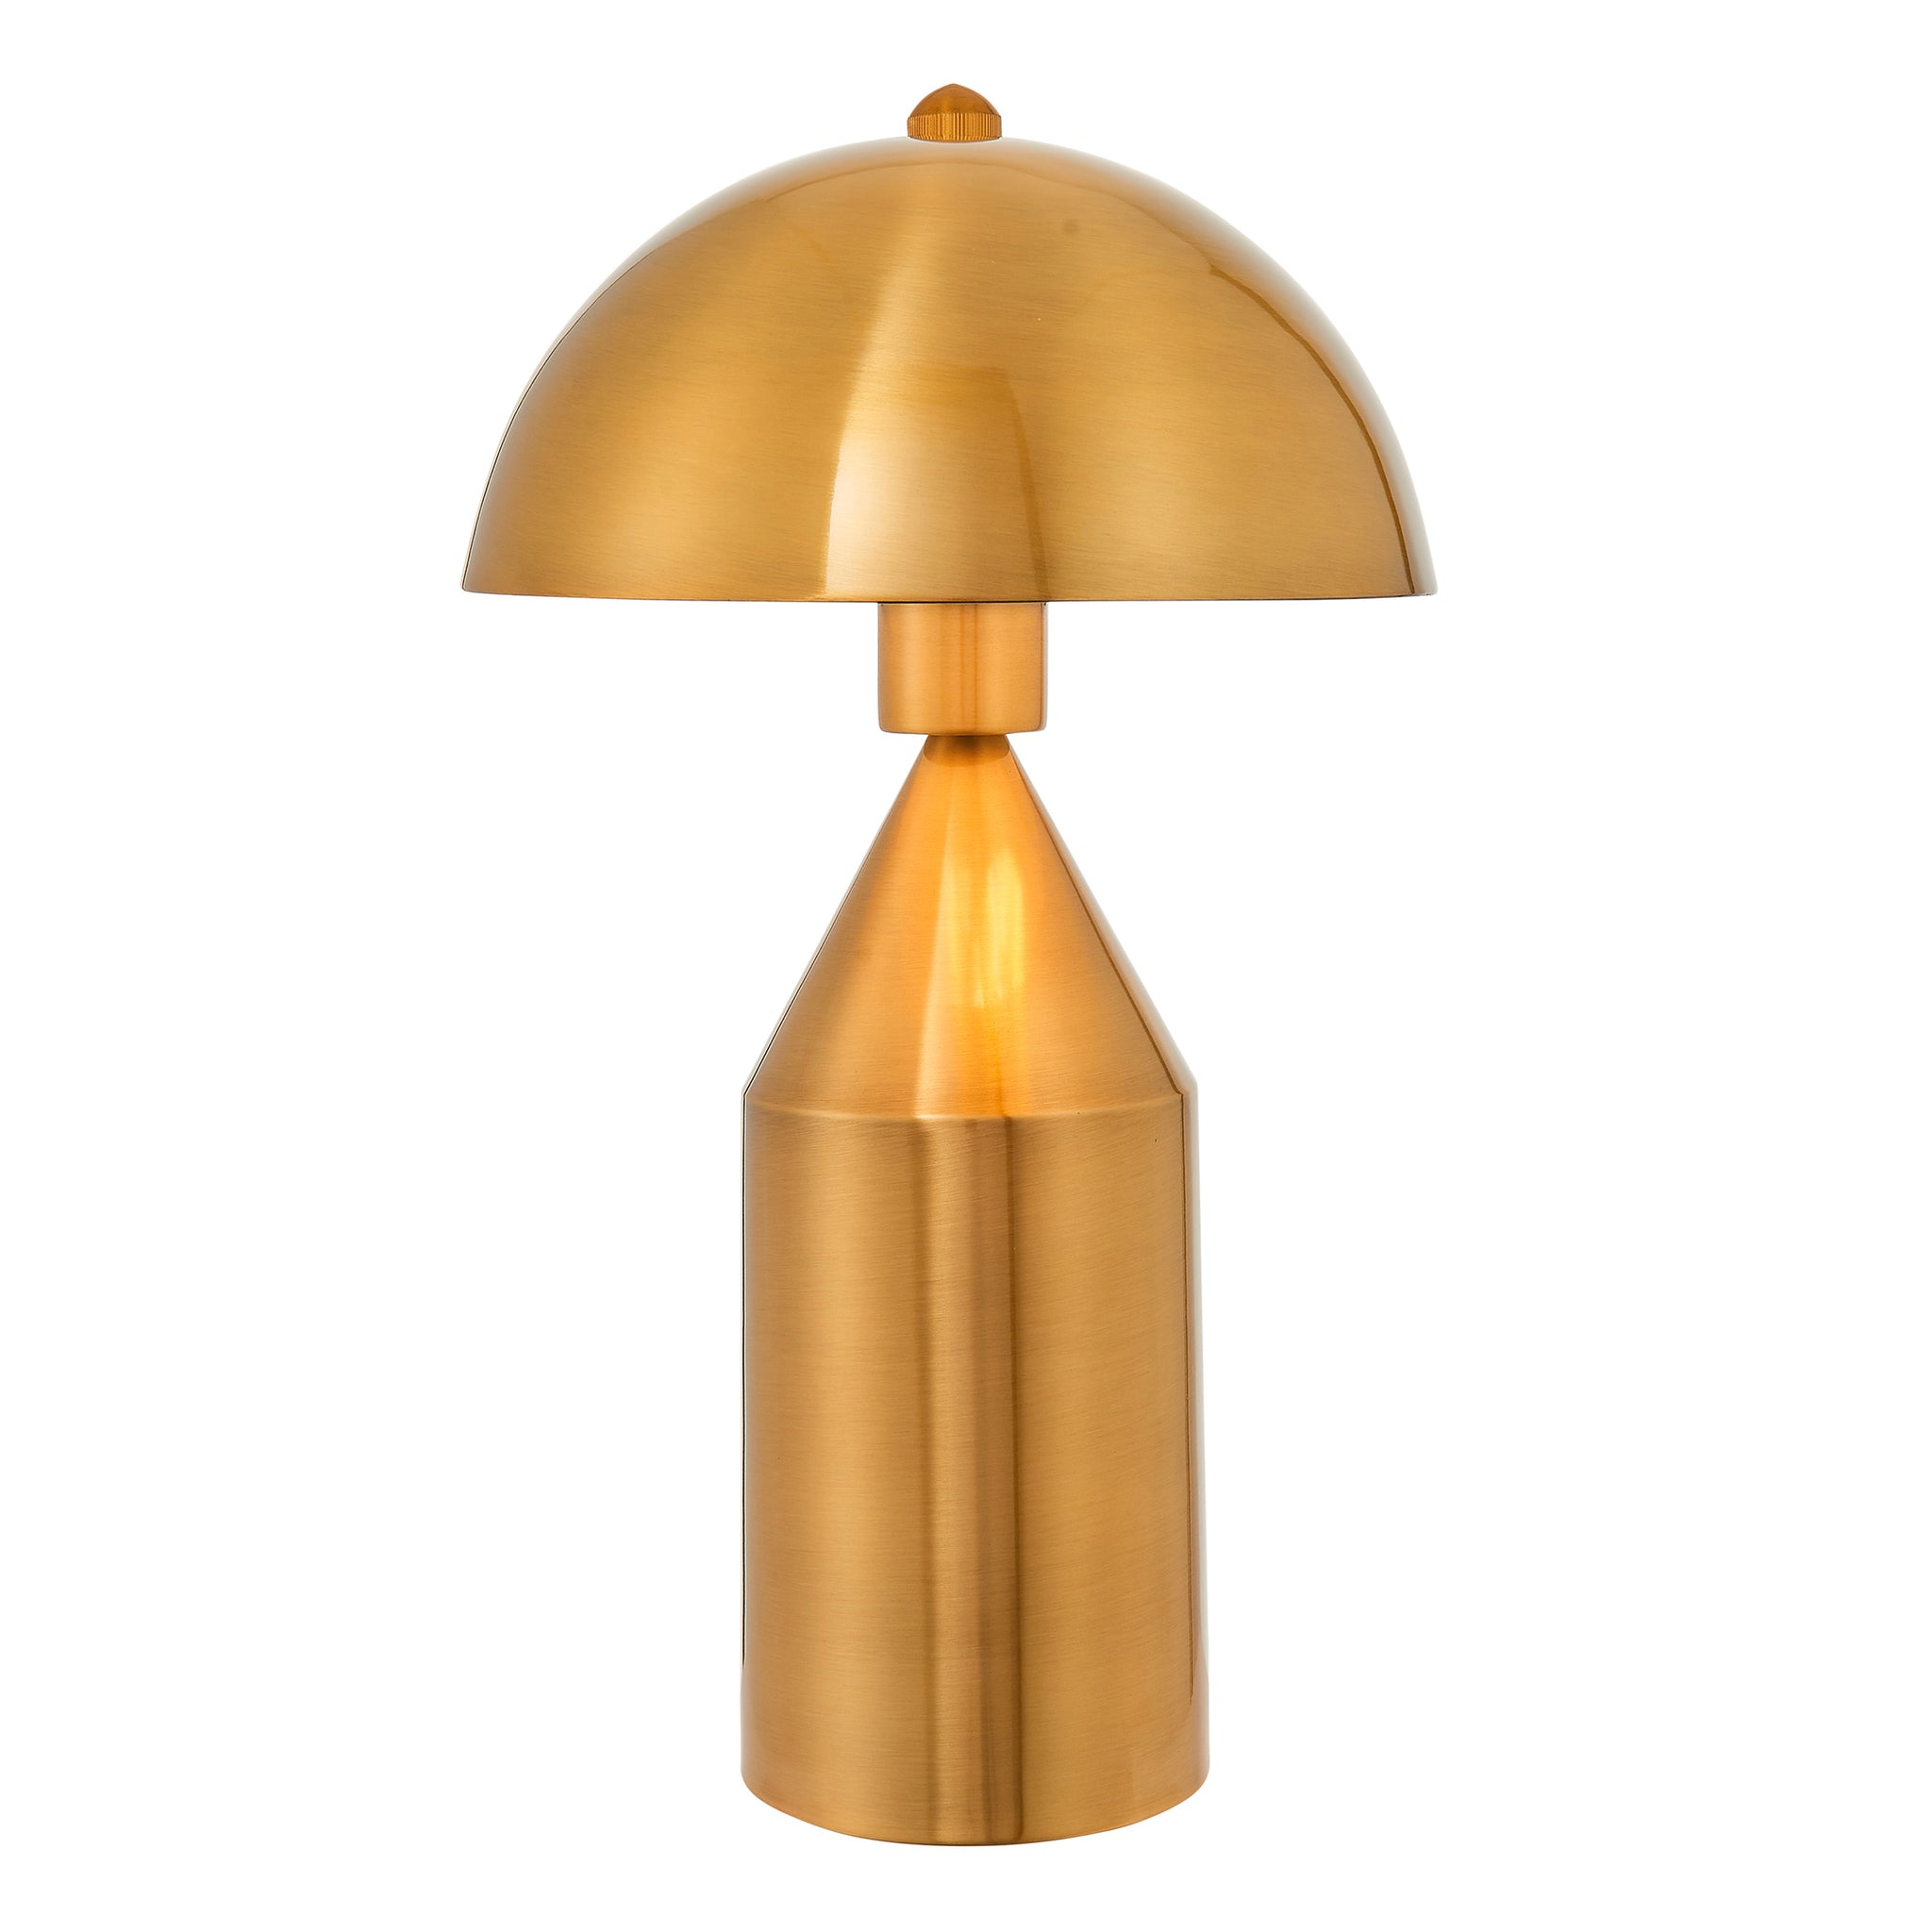 Ovum Table Light Antique Brass